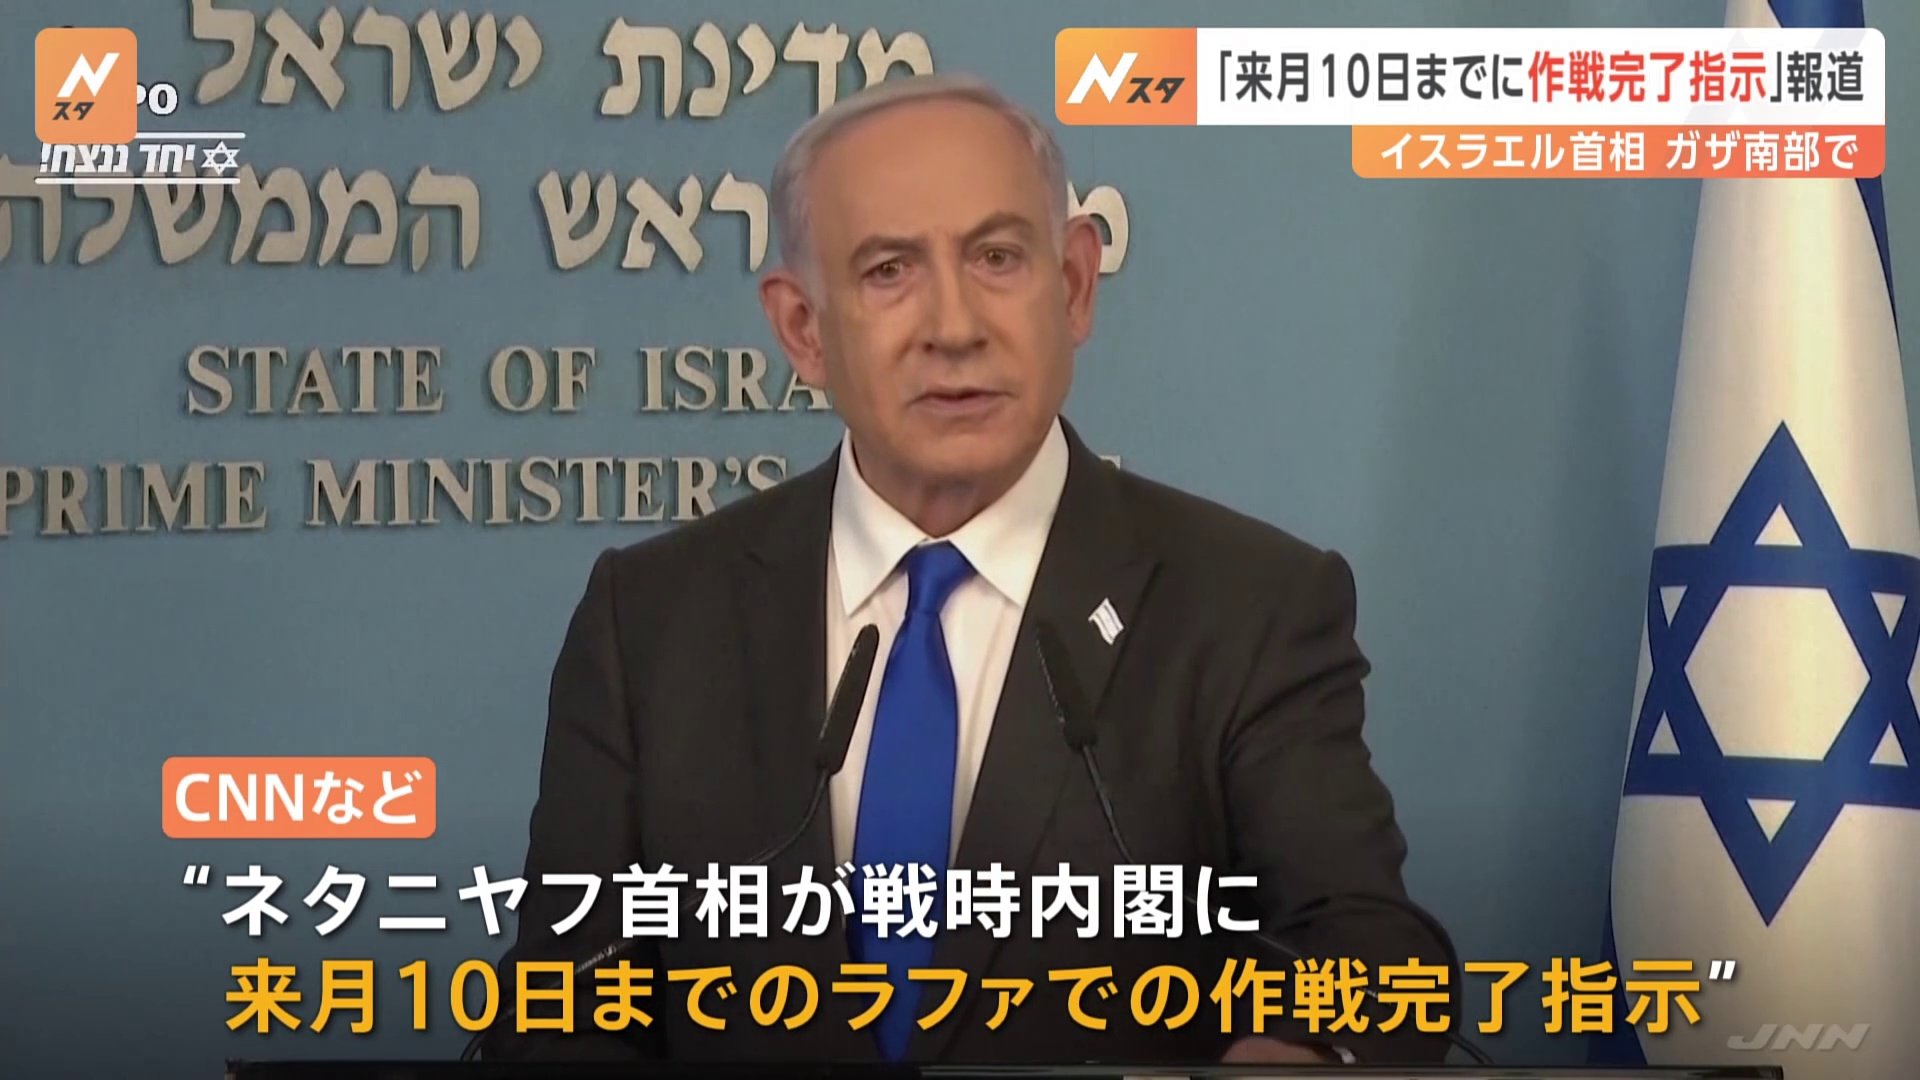 イスラエル･ネタニヤフ首相が“ラファ作戦”「来月10日までに完了を指示」と 米CNNなどが報道